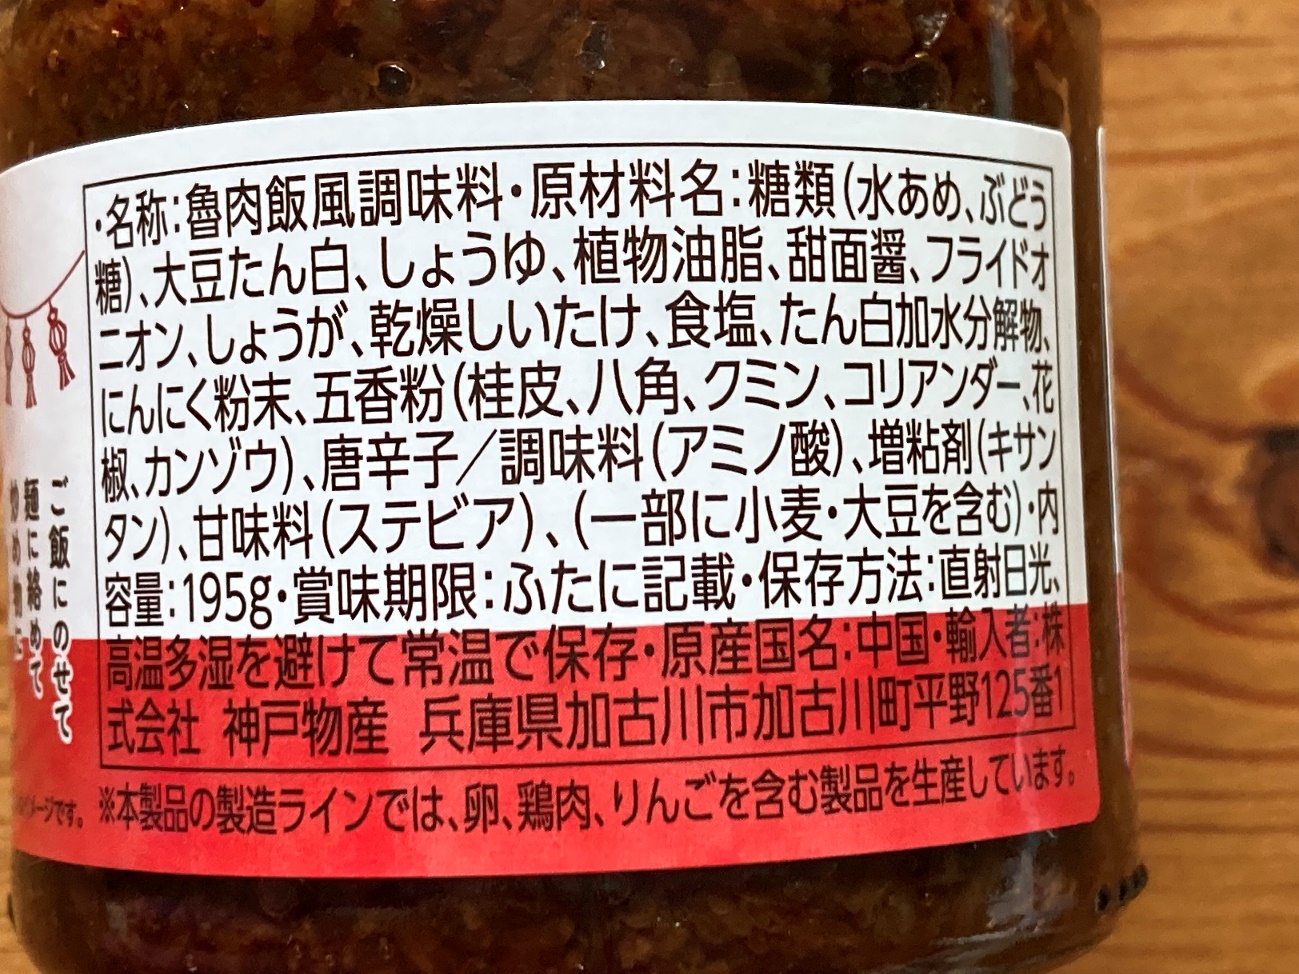 業務スーパーの畑のお肉の魯肉飯醬(ルーローハンジャン)の原材料名と原産国名の表記